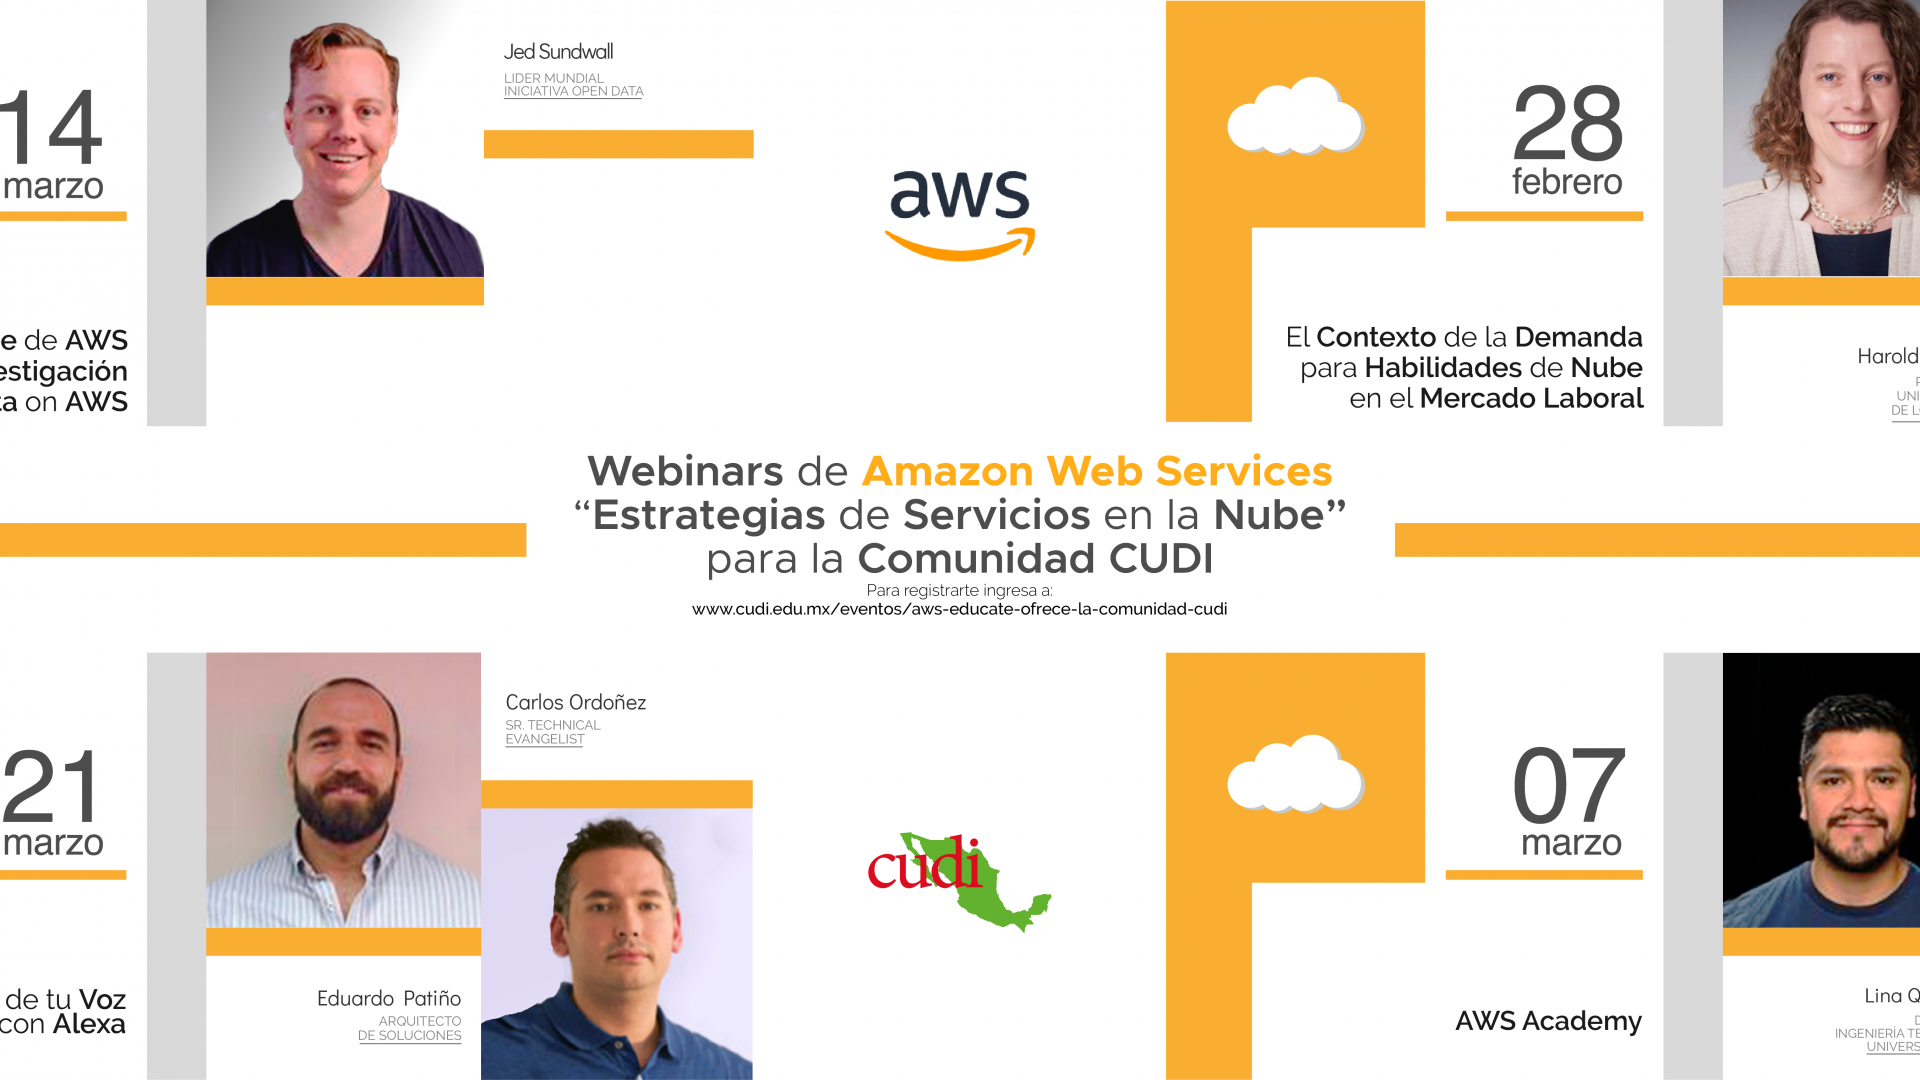 Webinars de Amazon Web Services "Estrategias de Servicios en la Nube"